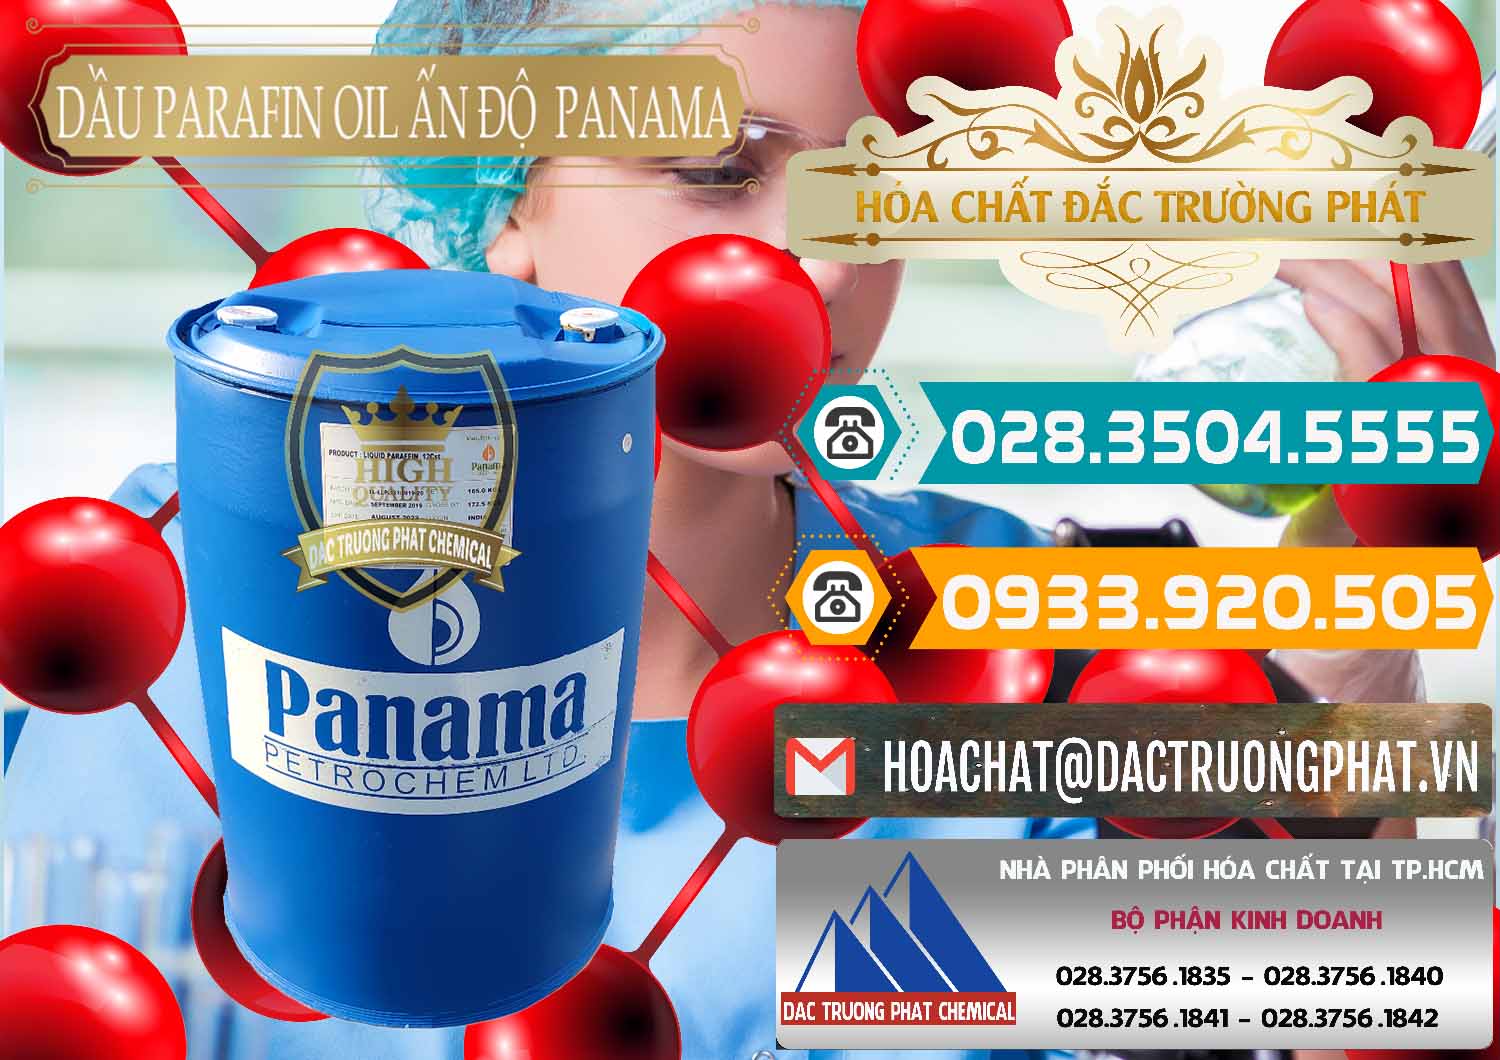 Cty chuyên kinh doanh và bán Dầu Parafin Oil Panama Ấn Độ India - 0061 - Công ty kinh doanh - cung cấp hóa chất tại TP.HCM - congtyhoachat.vn